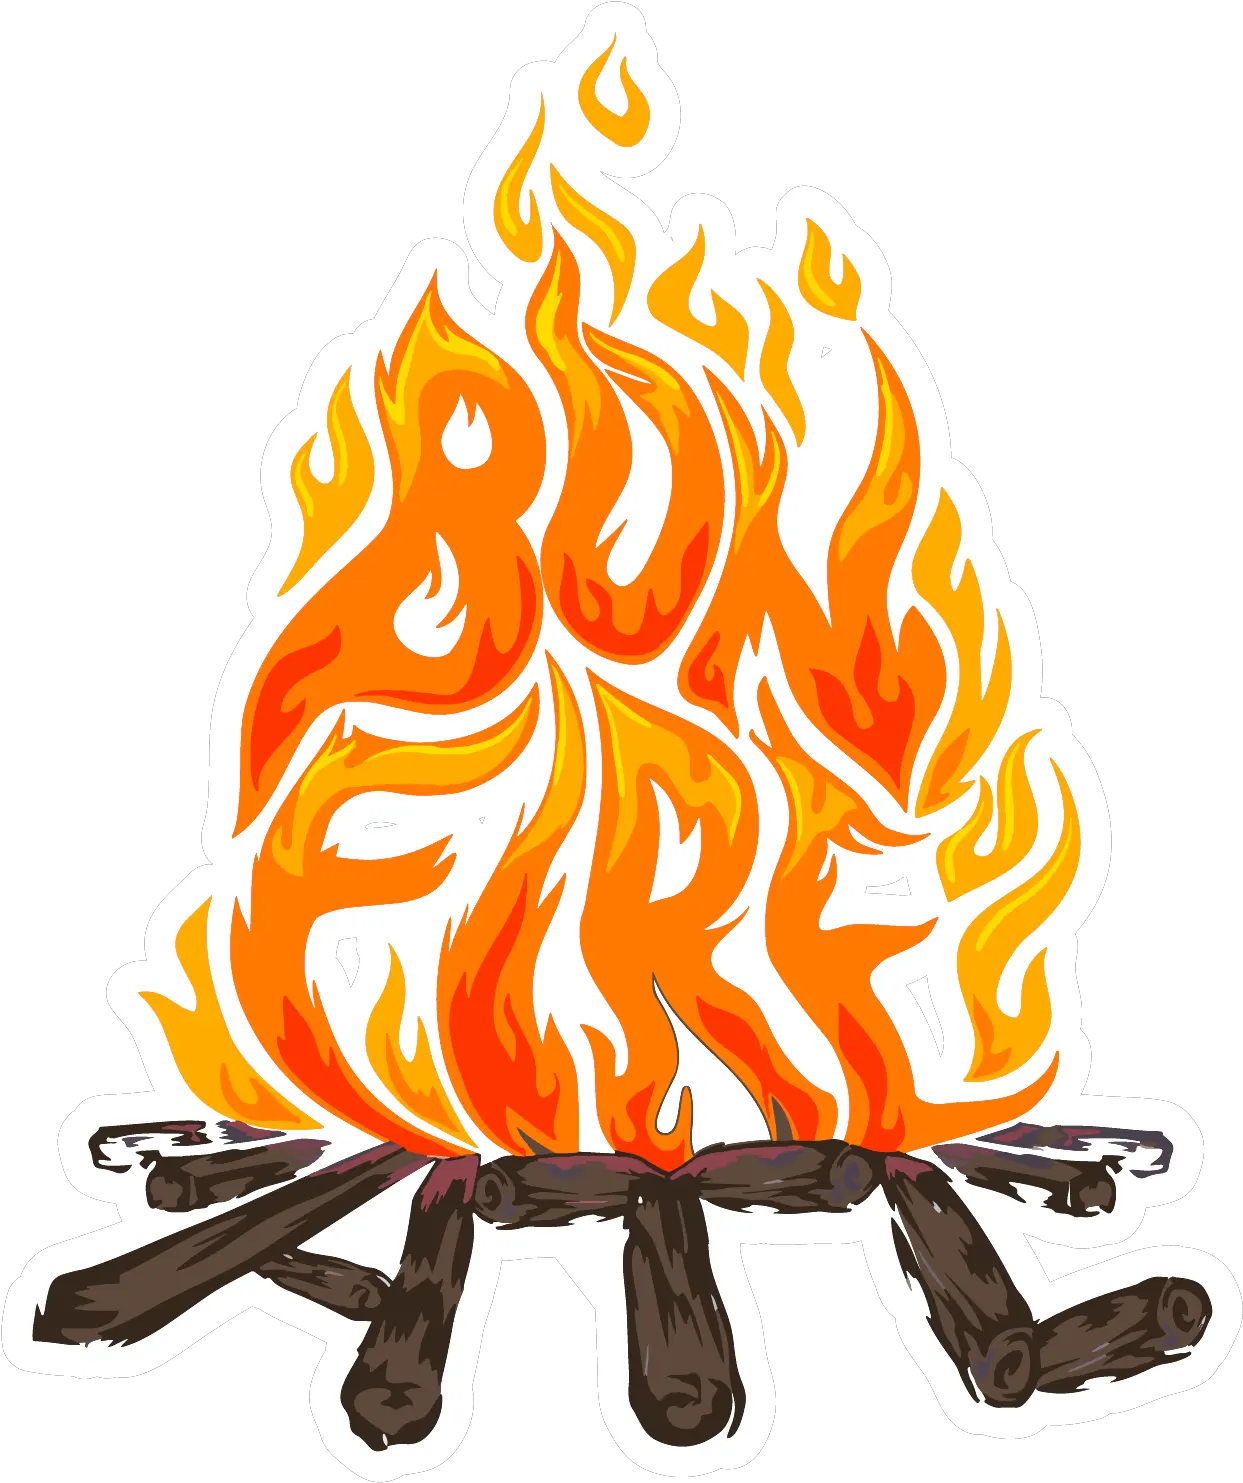 Download Bonfire Png Image With No Bonfire Atl Bonfire Png